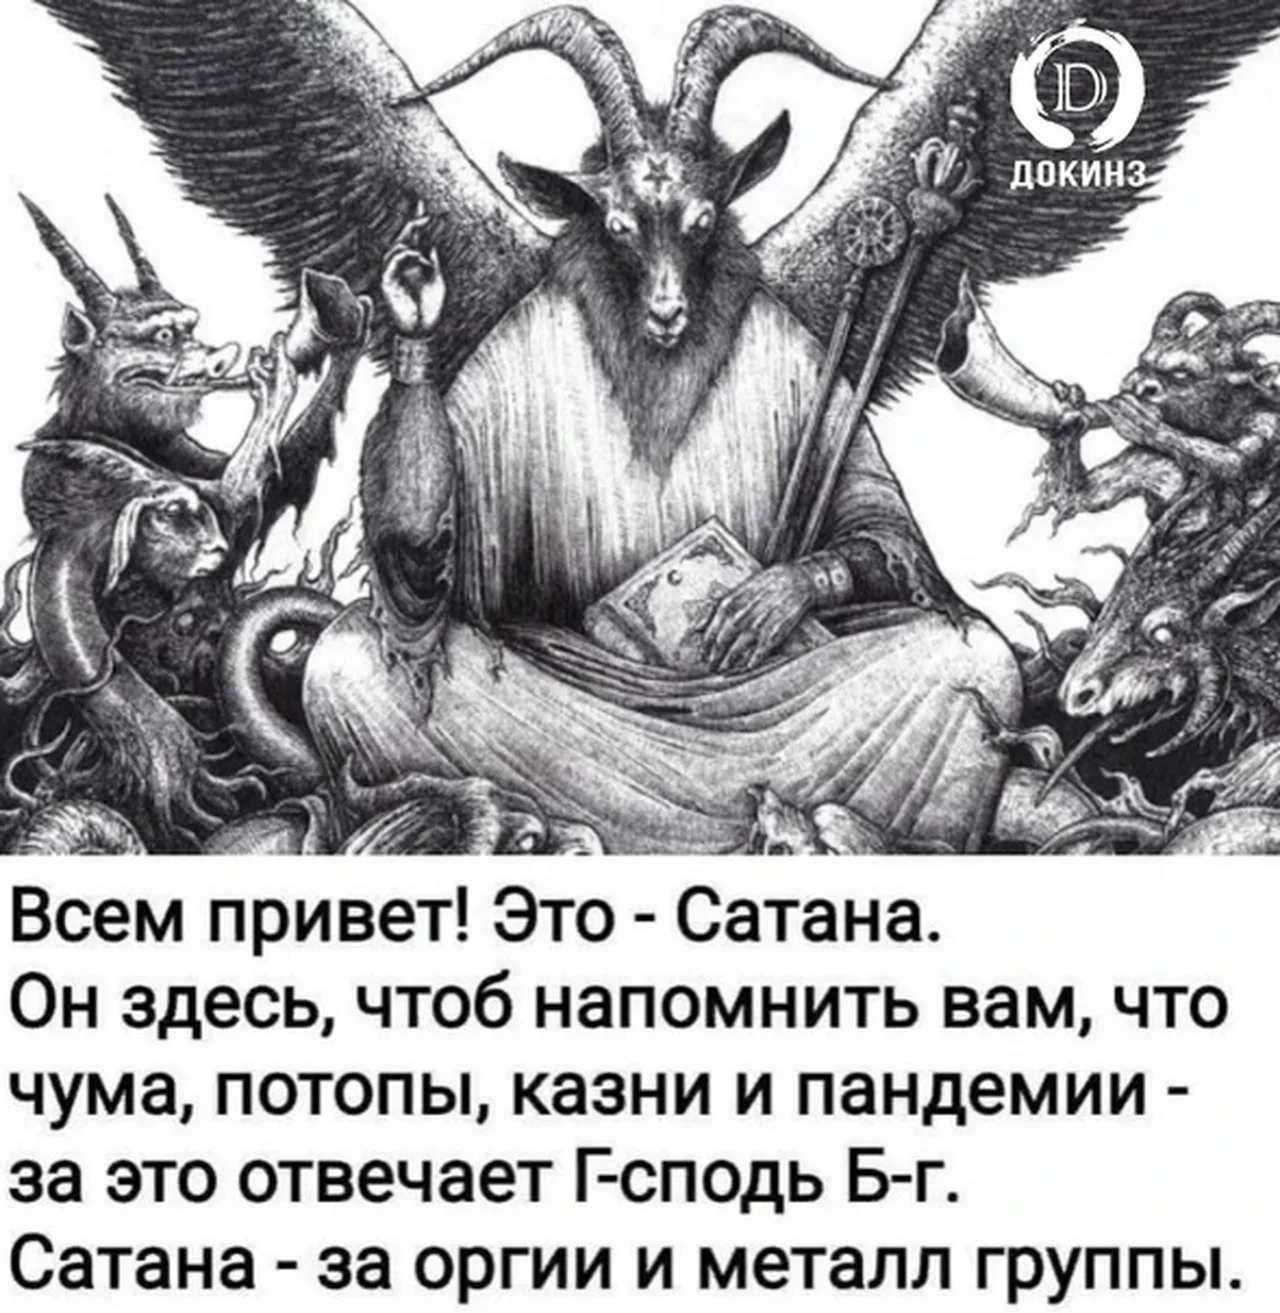 Вторая жена от черта. Божество дьявол. Сатана. Бог и сатана. Изображение дьявола в Библии.